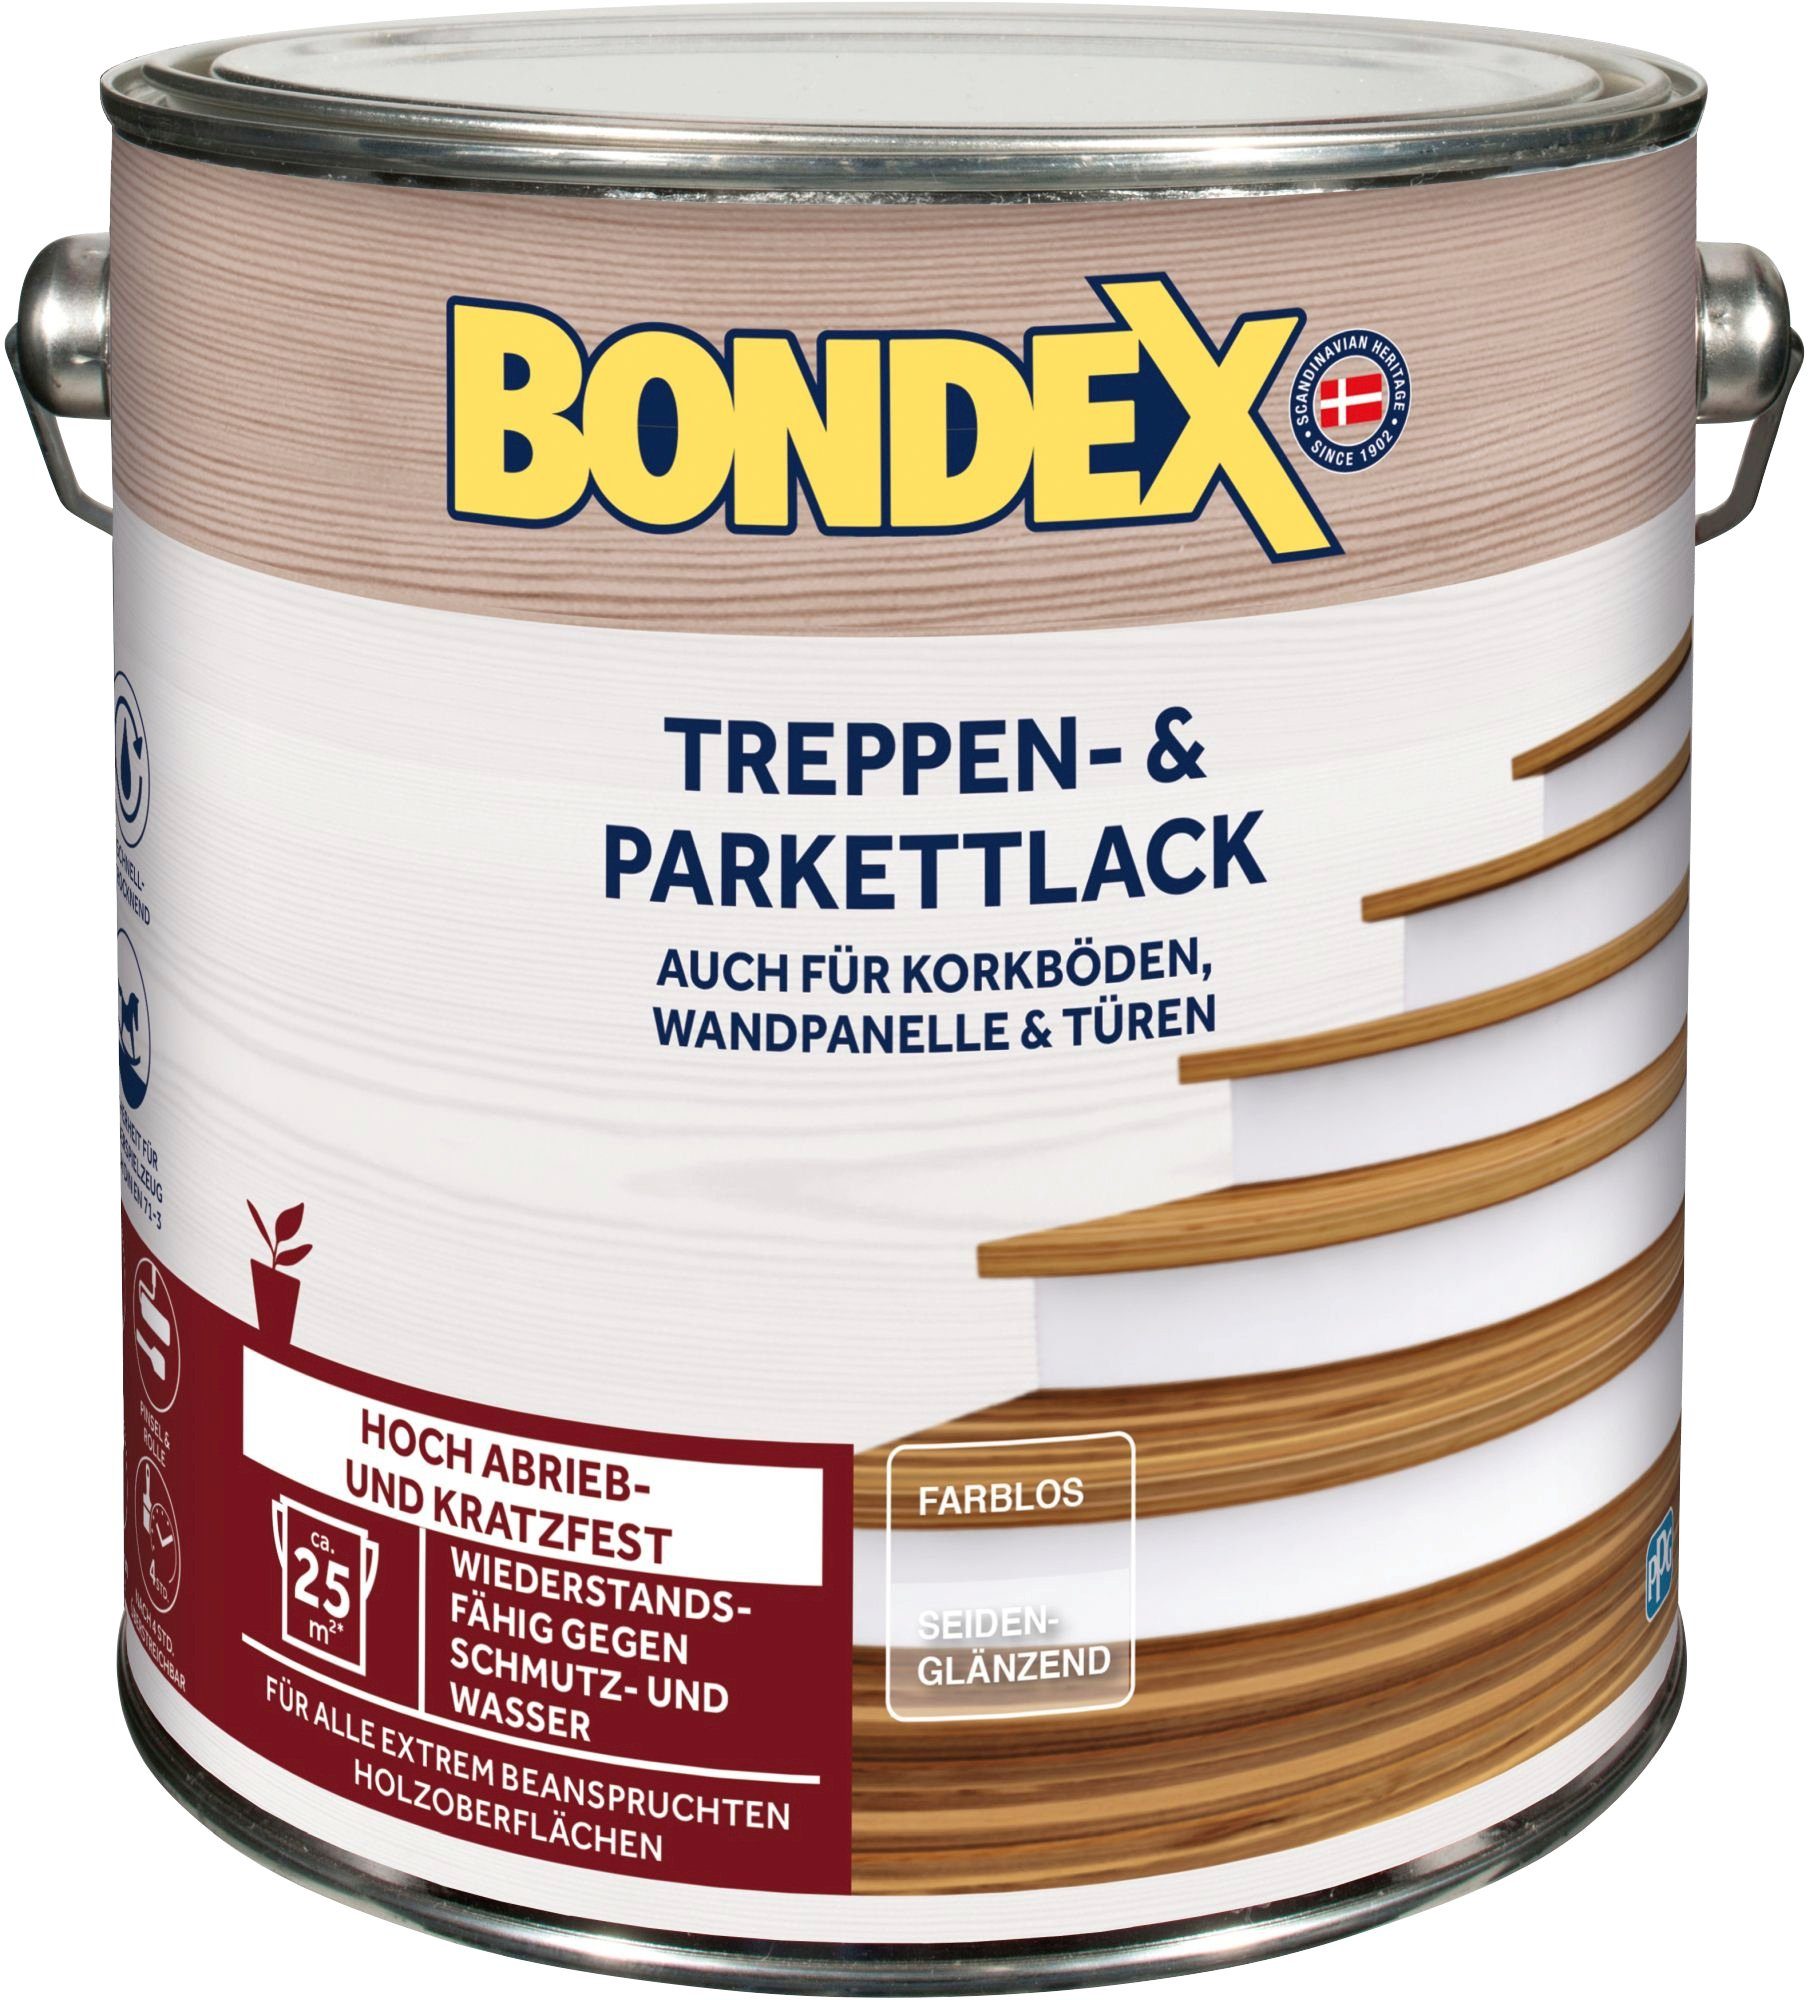 Bondex Treppen- und Parkettlack TREPPEN- & PARKETTLACK, farblos seidenglänzend, hoch abrieb- & kratzfest